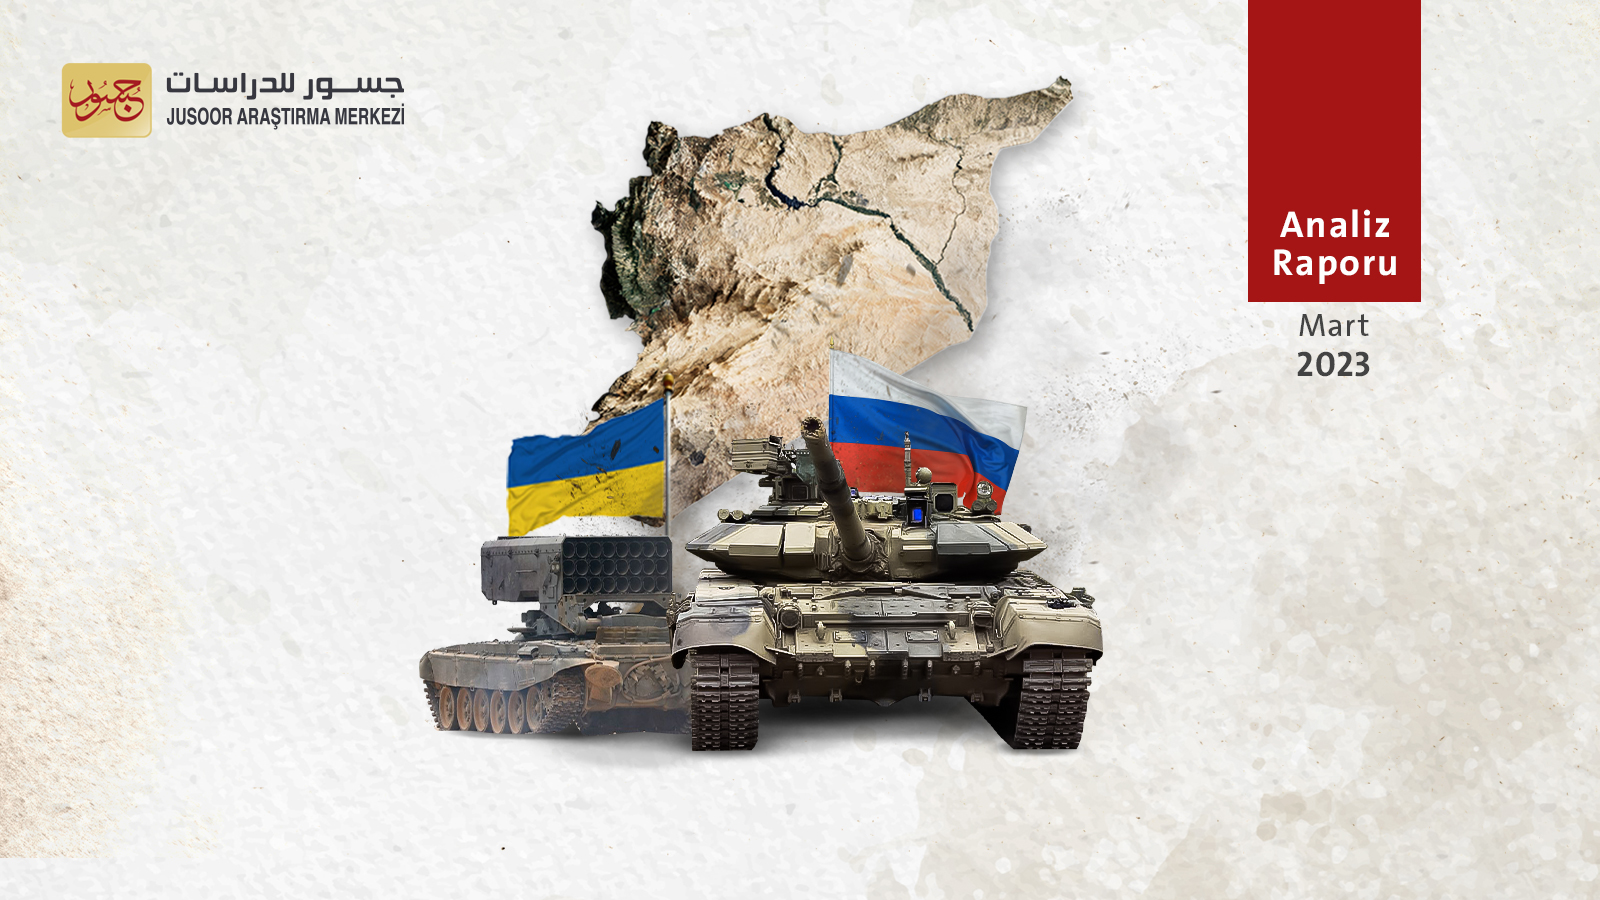 Rusya’nın Ukrayna işgalinden bir yıl sonra Suriye krizi